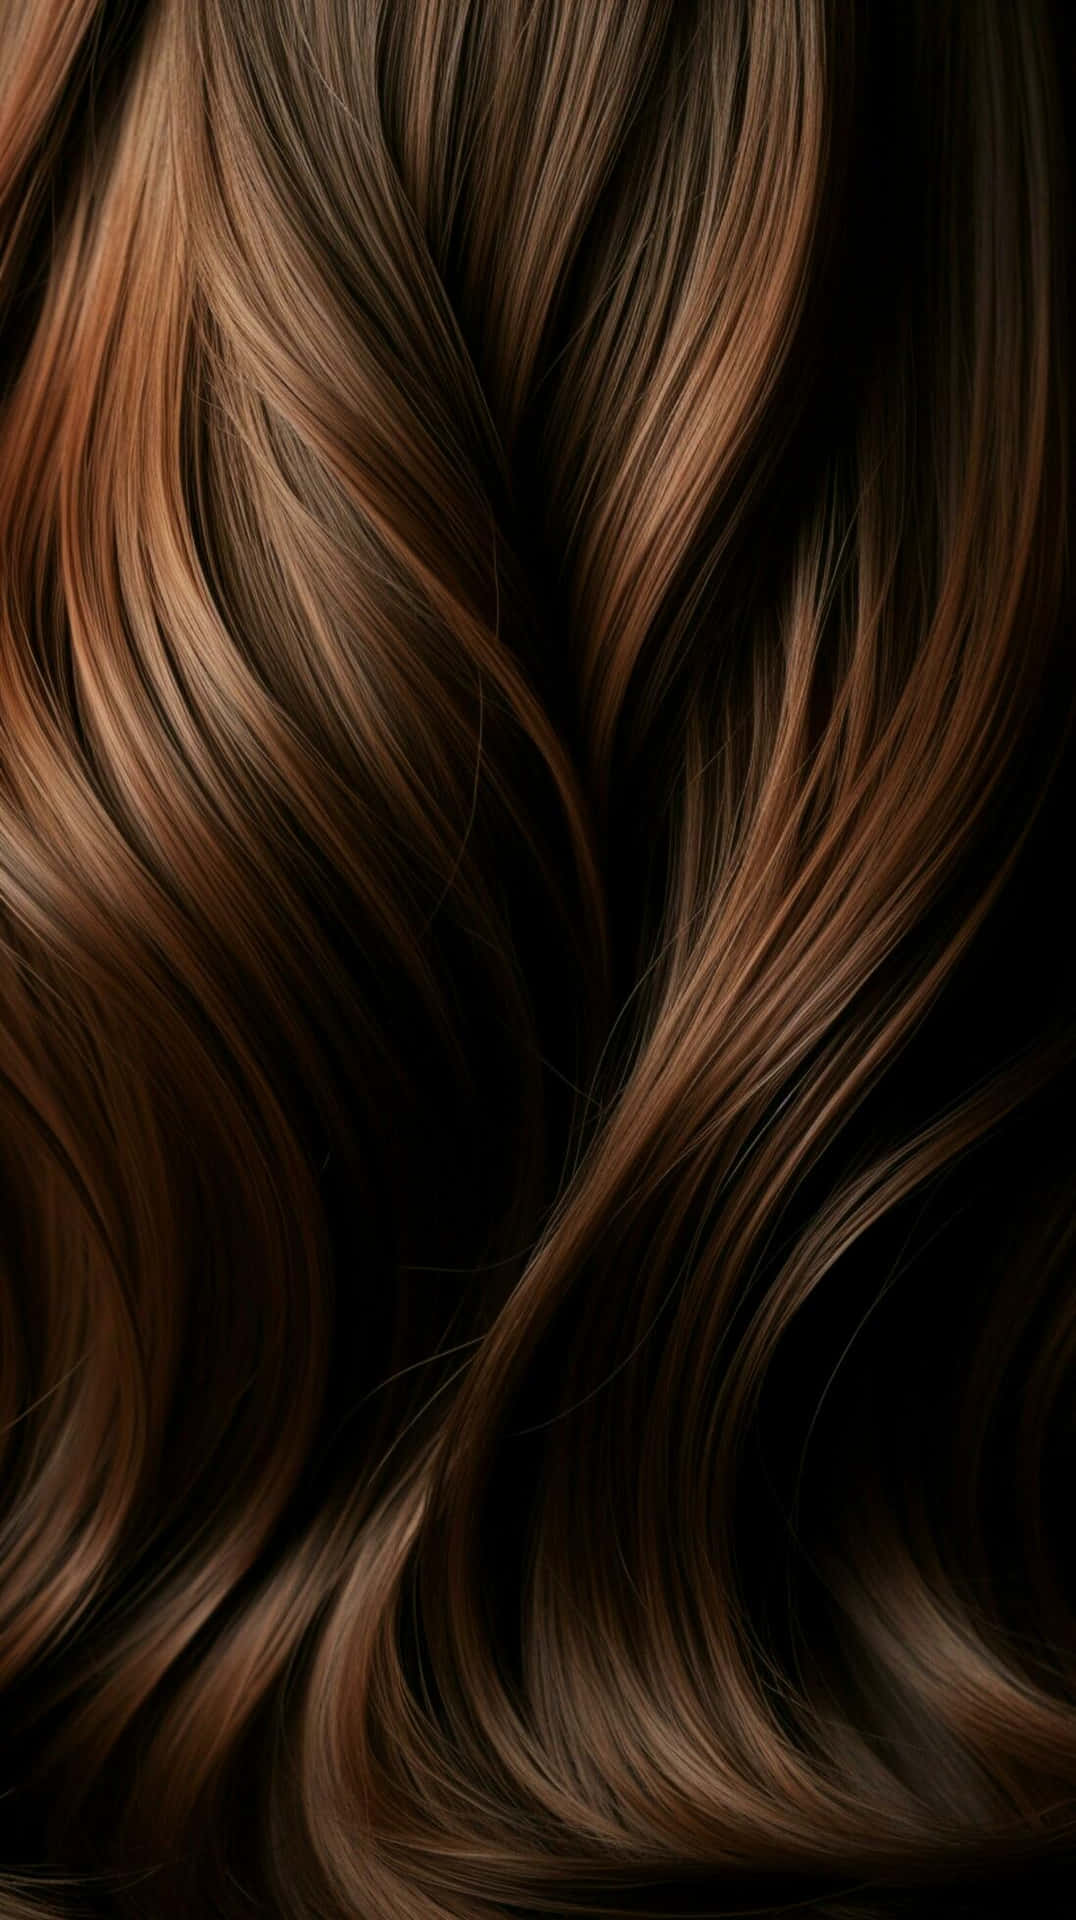 Flowing Brunette Hair Waves Wallpaper